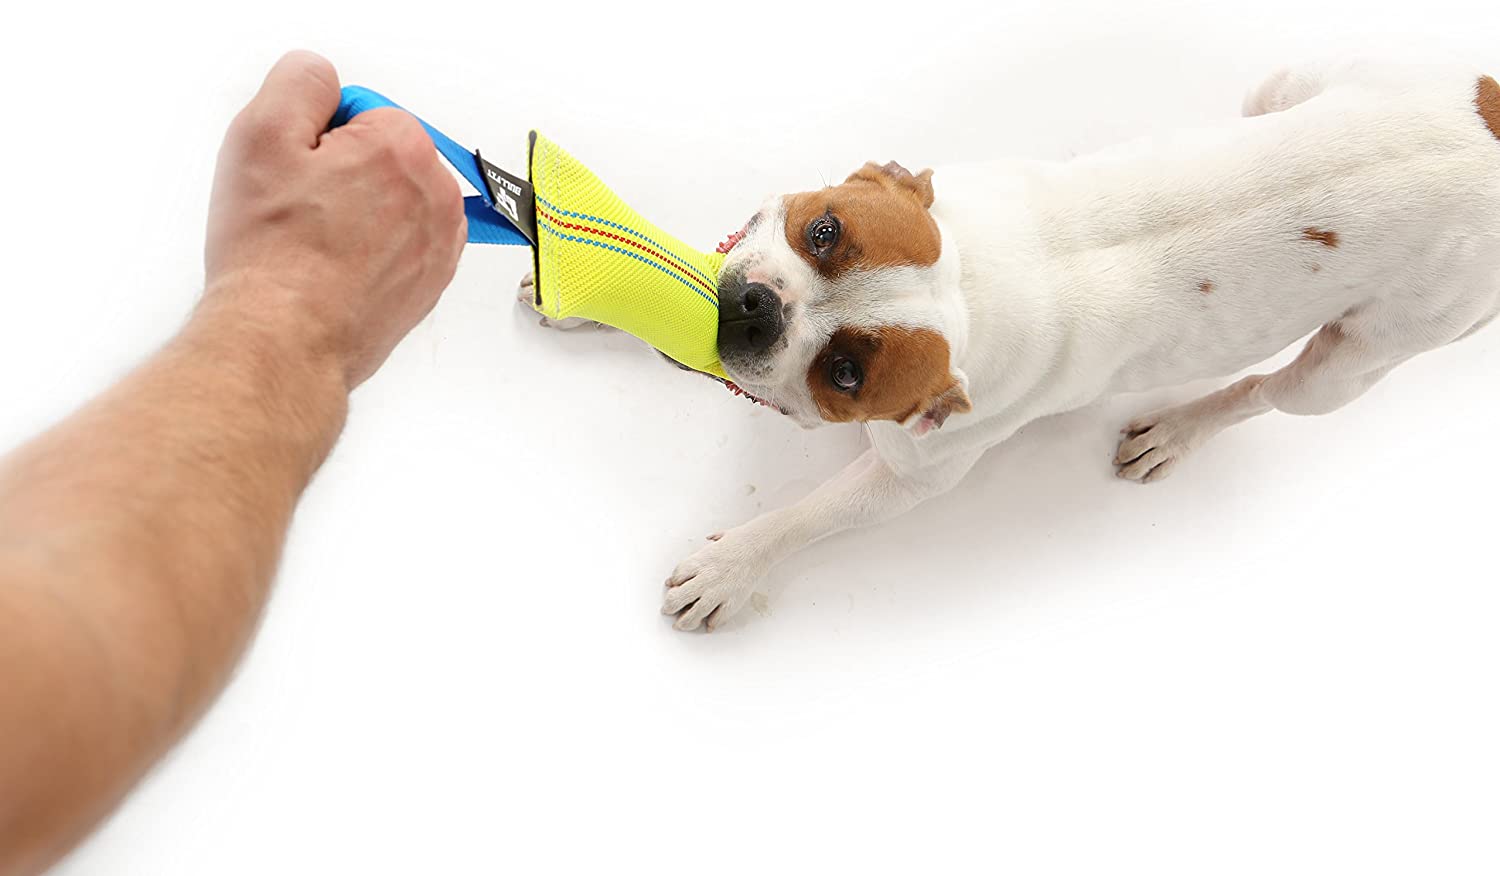  Bull Fit mordedor perro K9, 30 cm - Embutido de manguera, dummy y motivador canino resistente y duradero - juguetes para perros de entrenamiento 